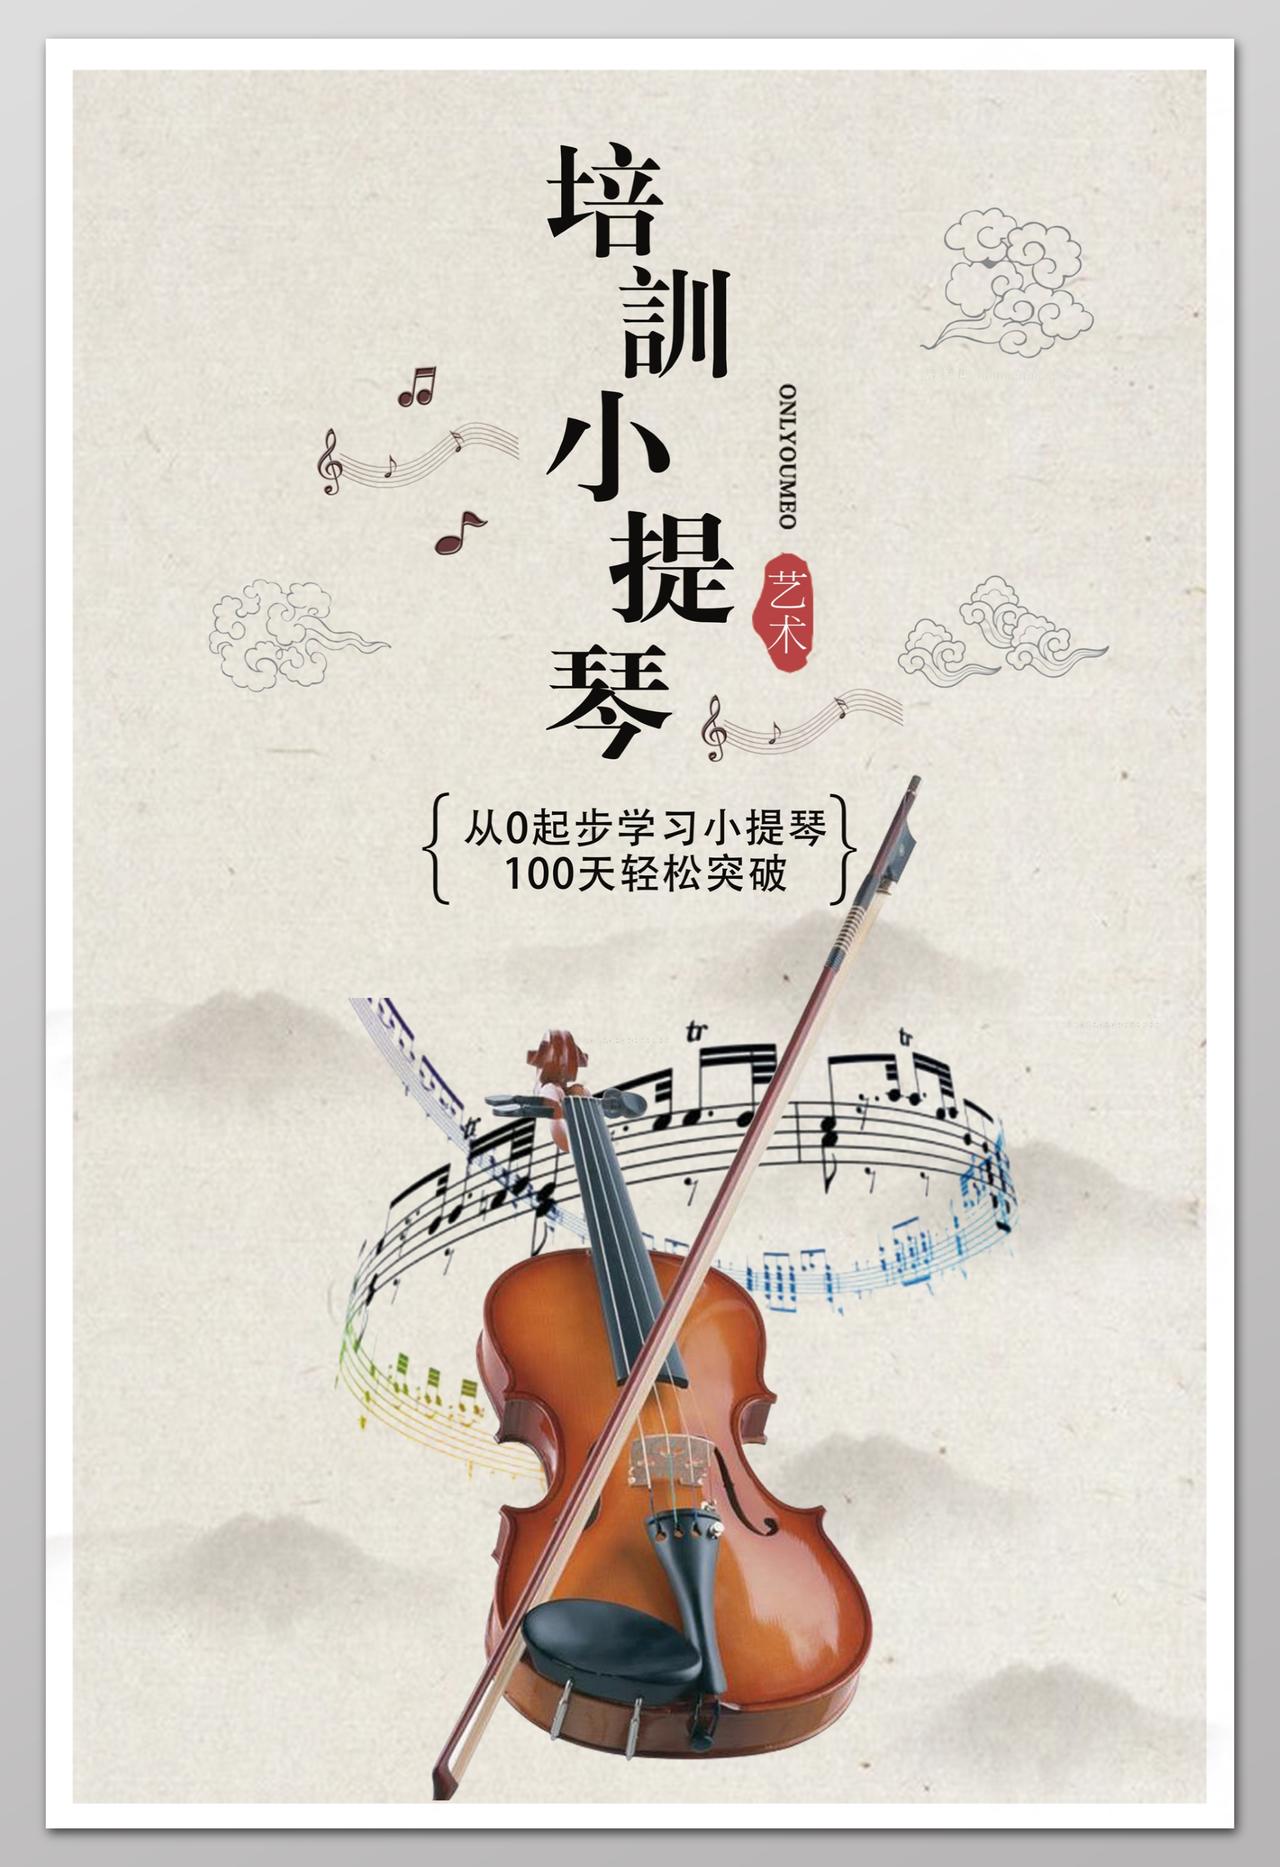 培训小提琴复古文艺灰色水墨小提琴培训招生海报设计